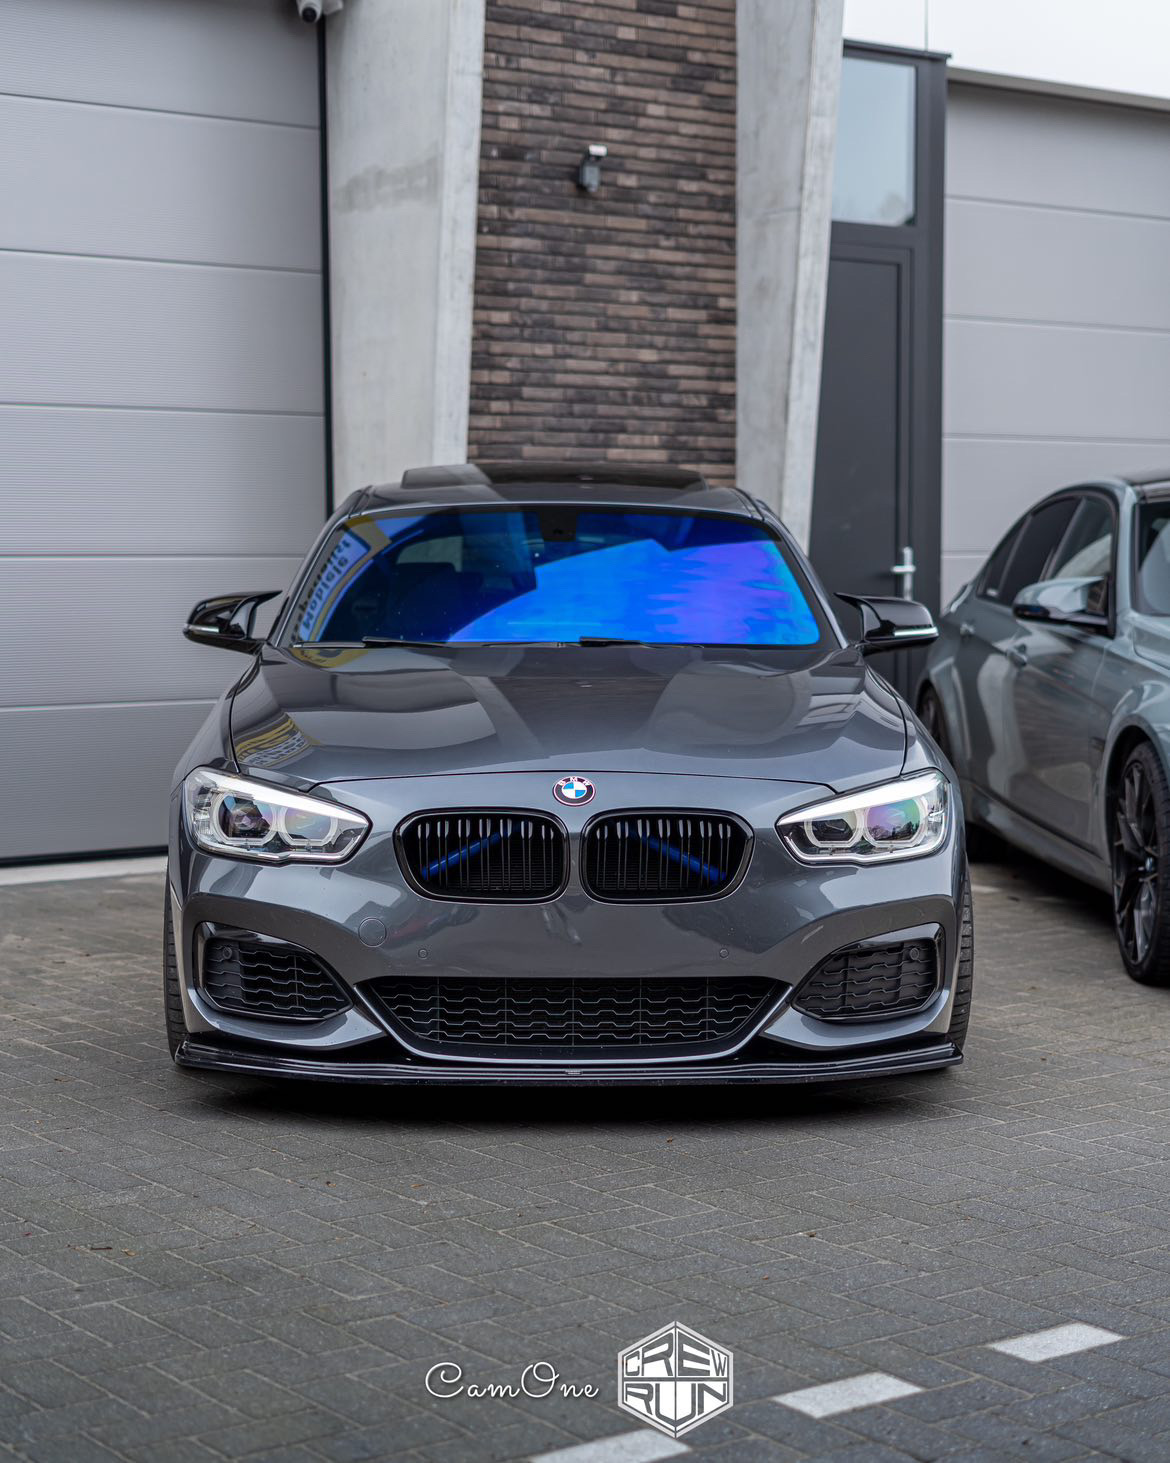 BMW M140i 2019 geparkeerd voor de garage van Crew Run in Mechelen waarvan de voorruit door High Tint is getint met Chameleon Tint